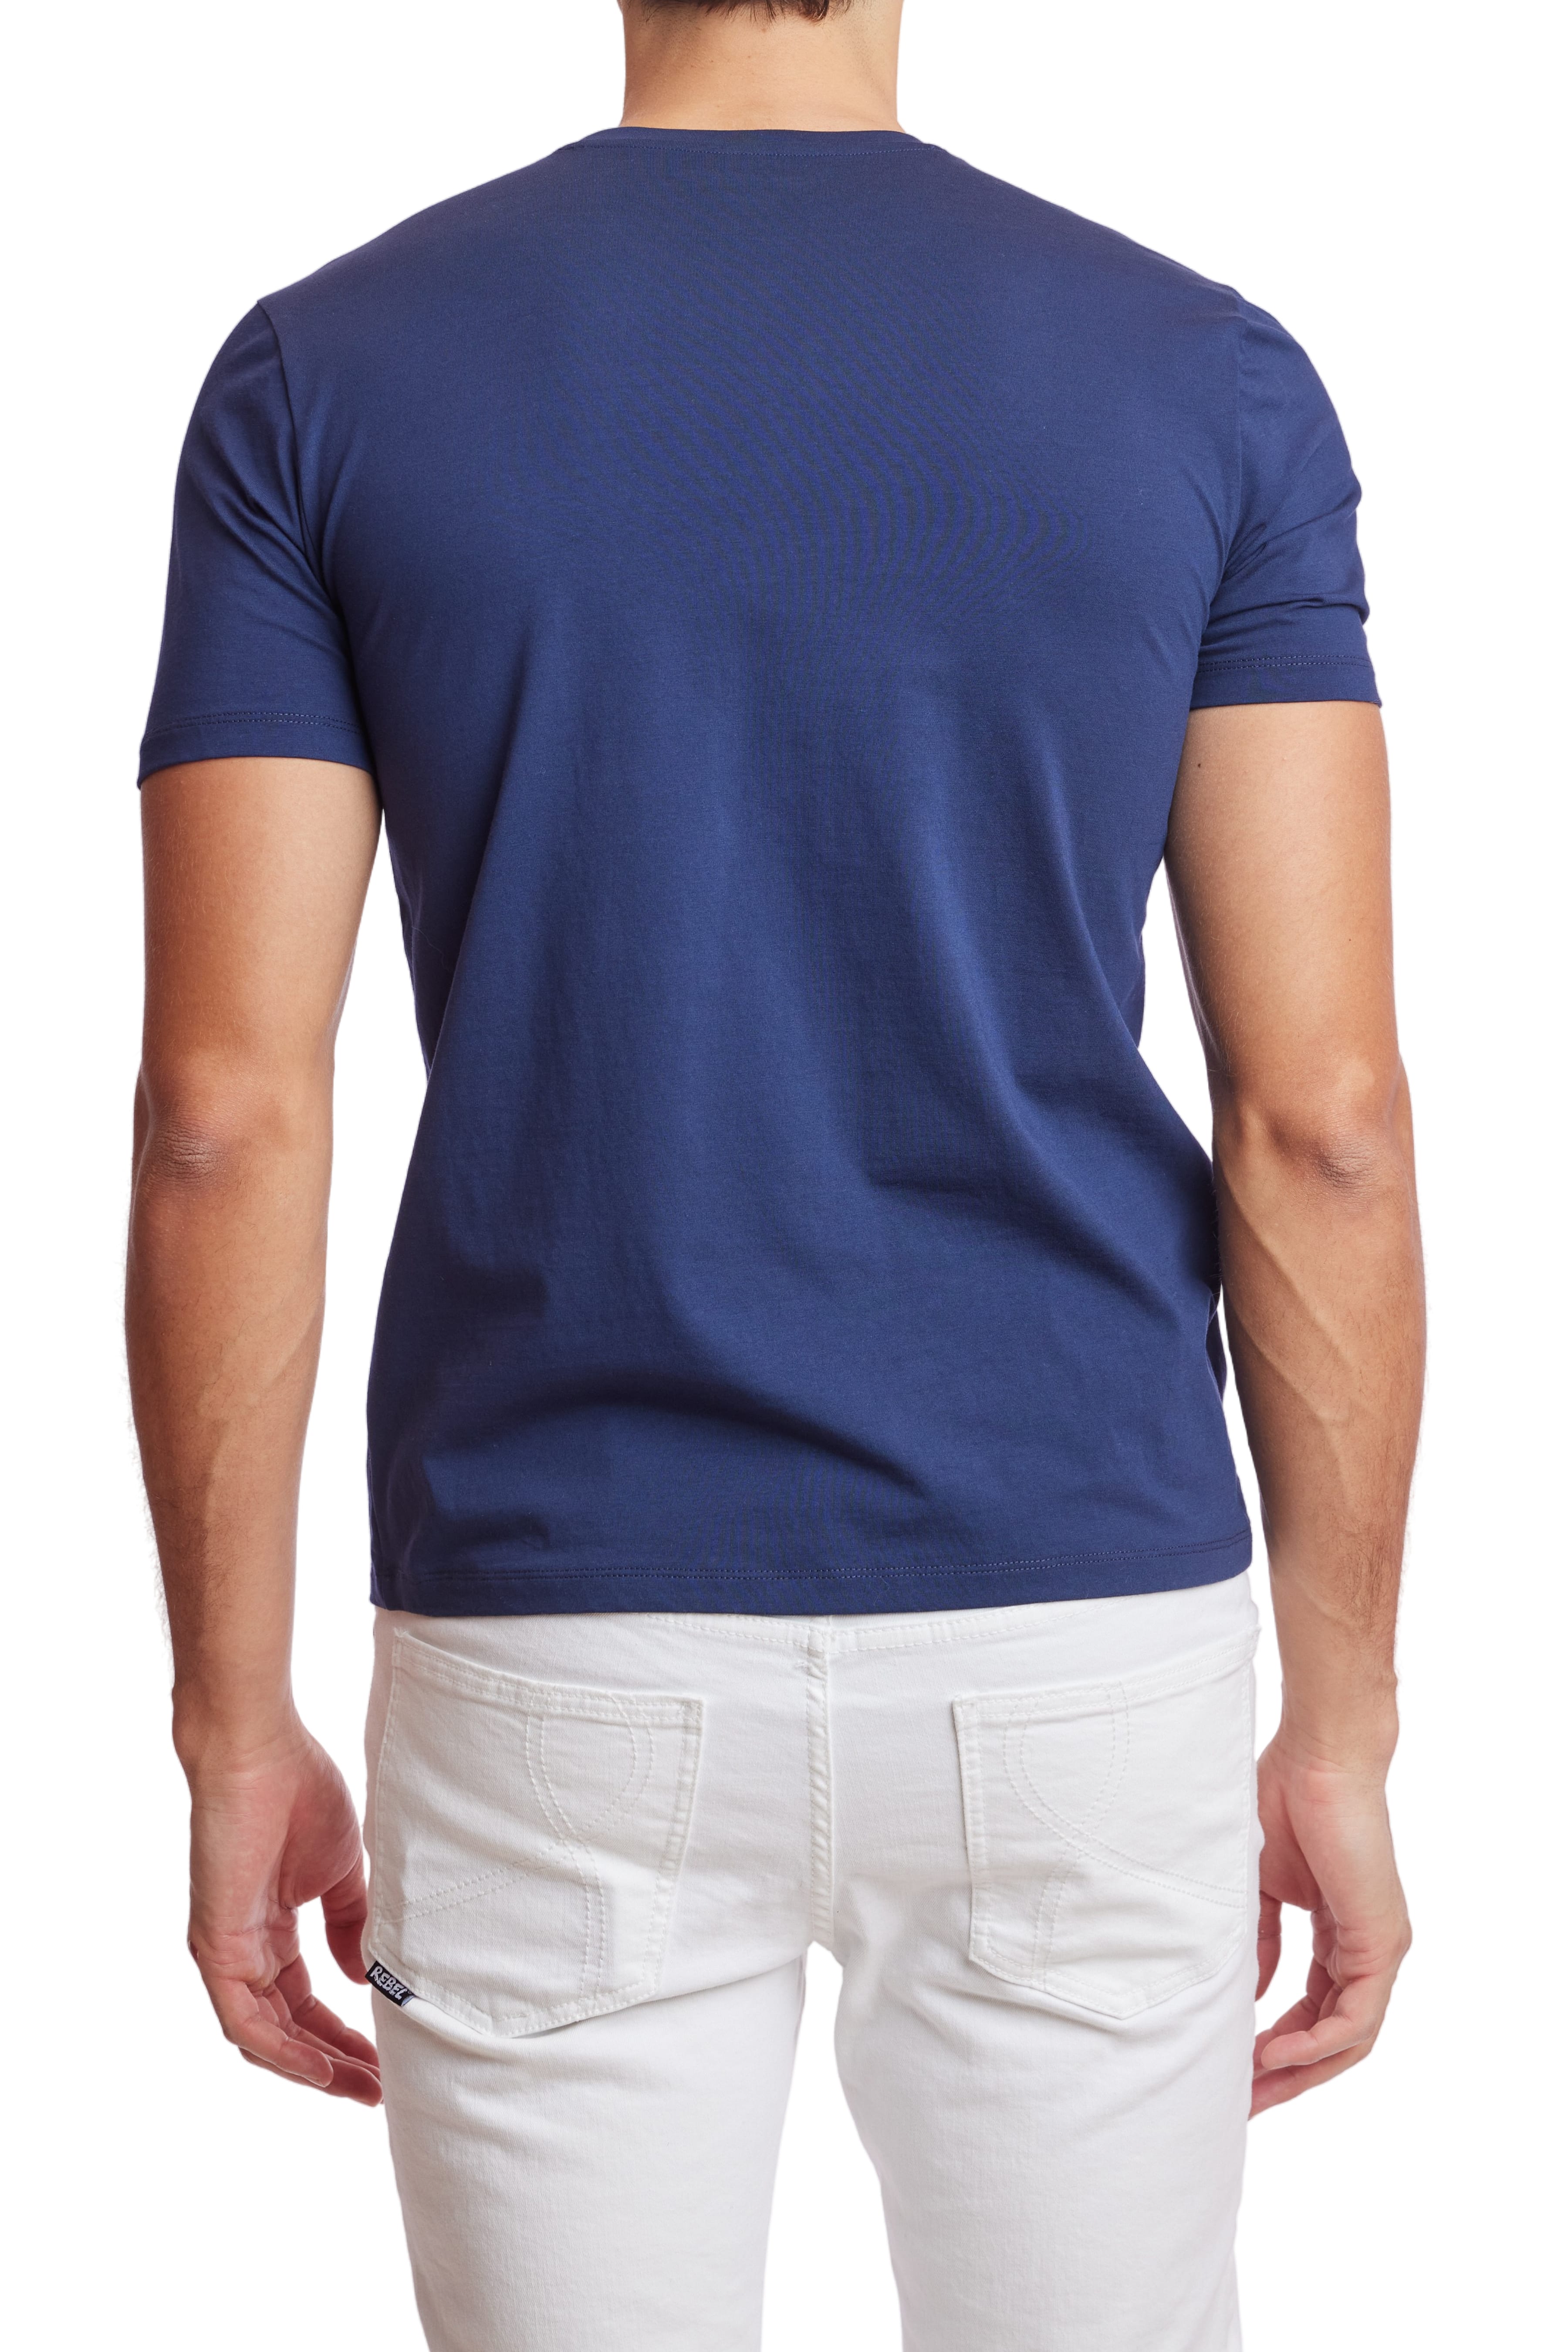 Lucas Crew T-shirt - Navy Blue